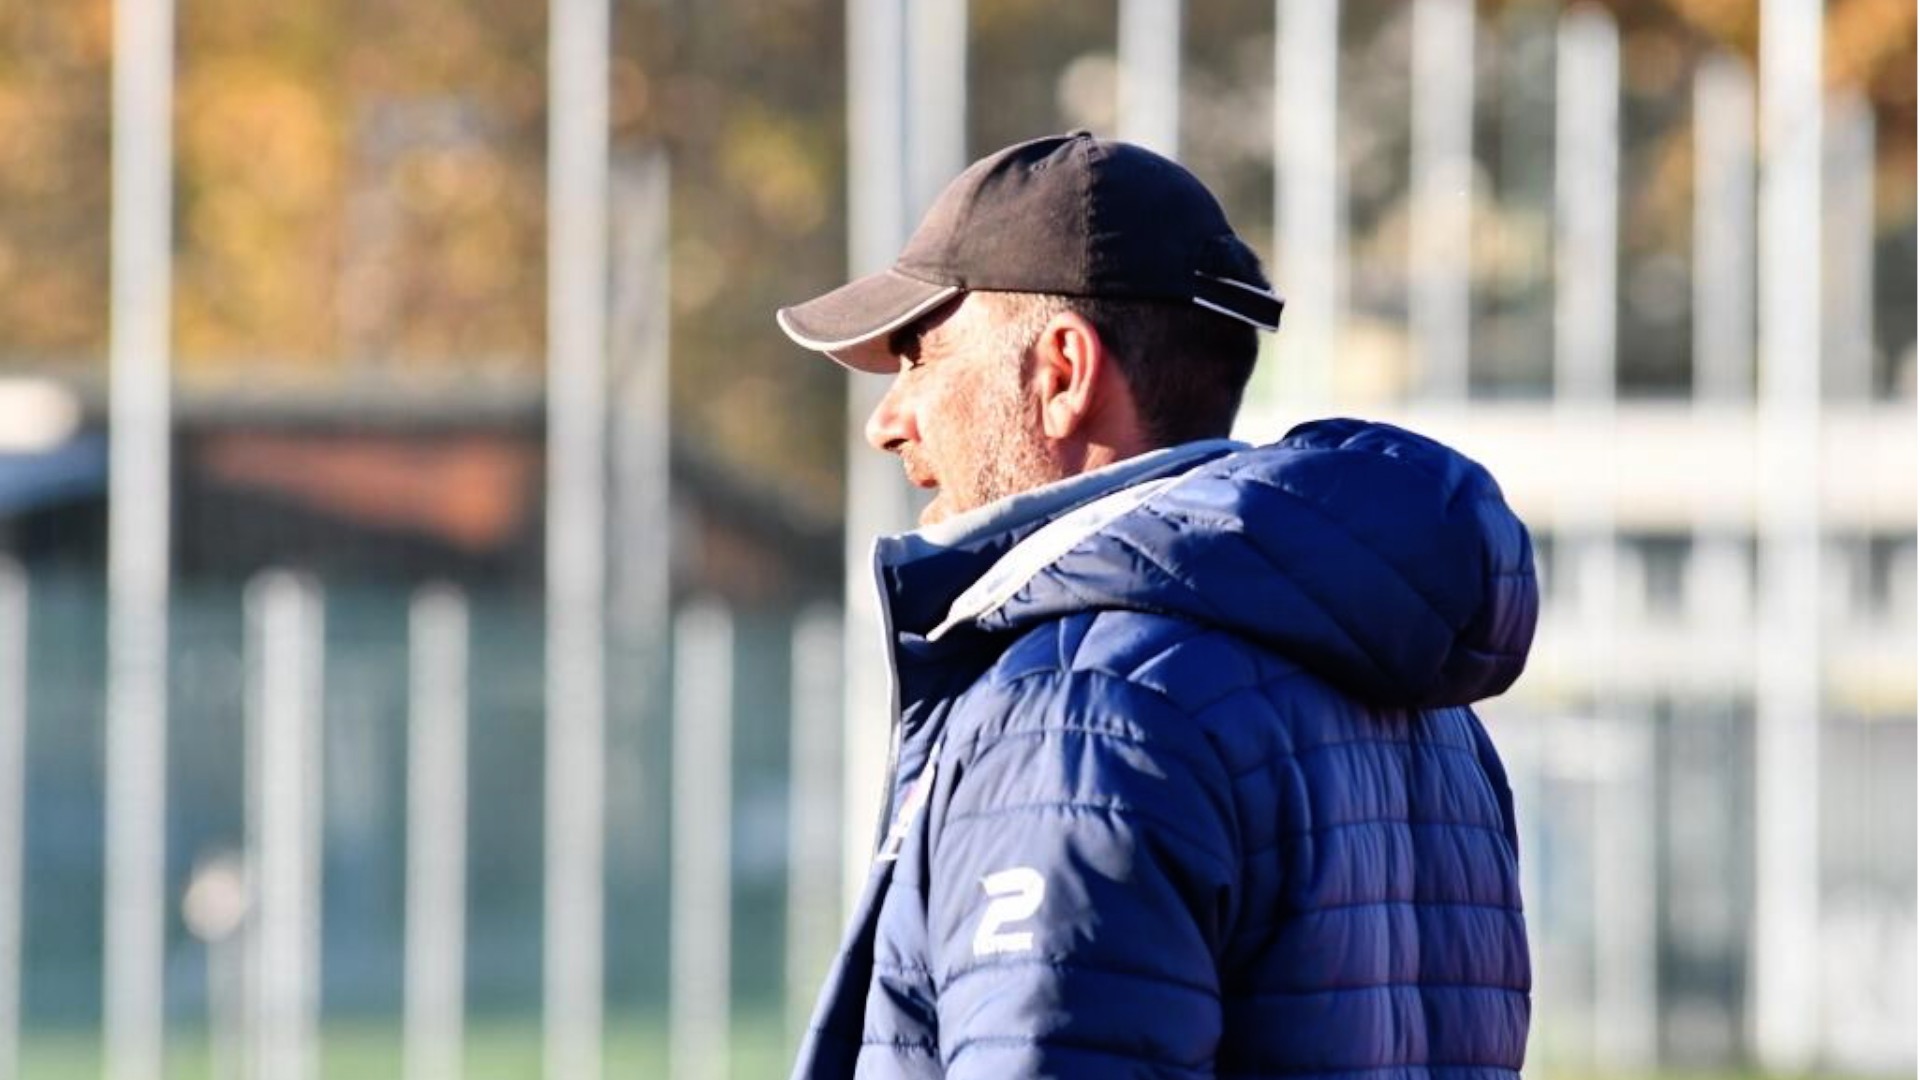 Serie A Calcio – JCP’s third match in a row against Novese